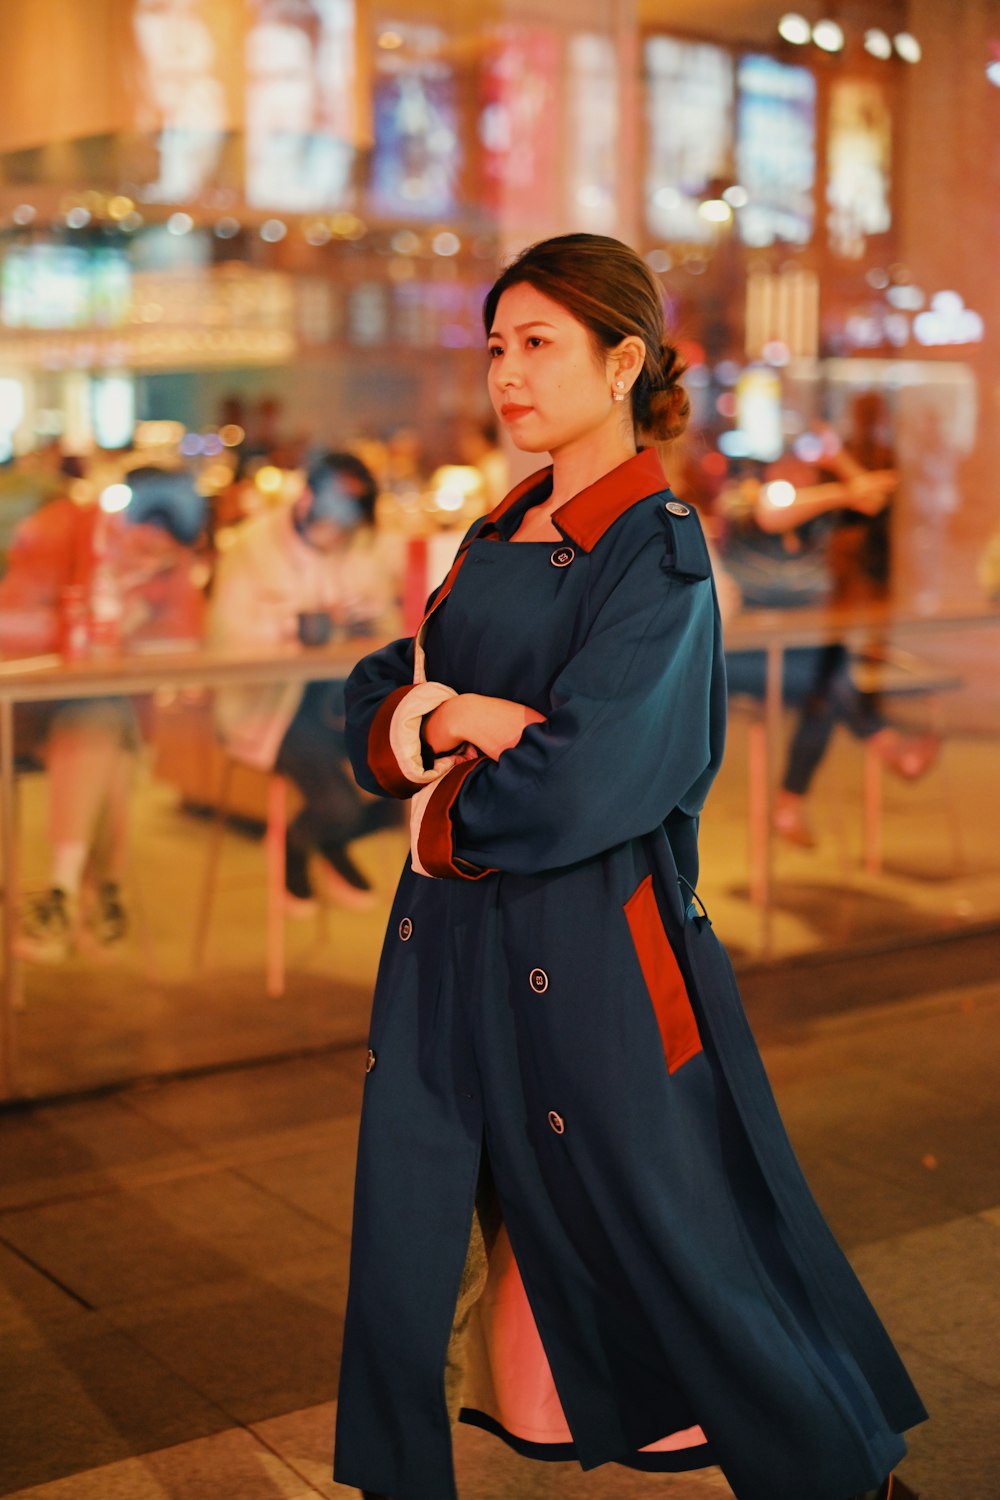 mujer con uniforme escolar azul y rojo de pie